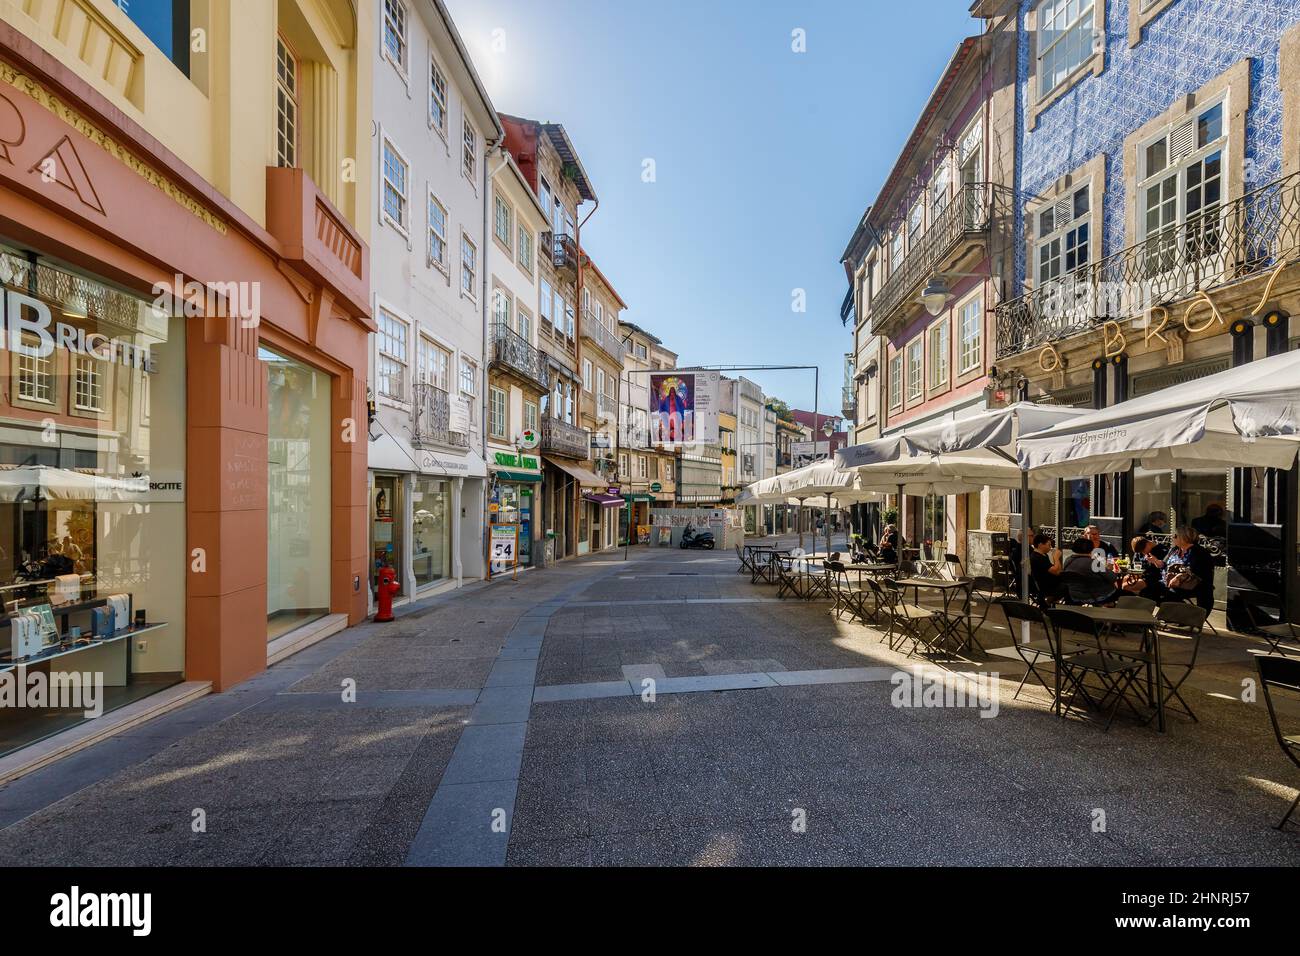 Straßenatmosphäre und architektonische Details in Brage, Portugal Stockfoto